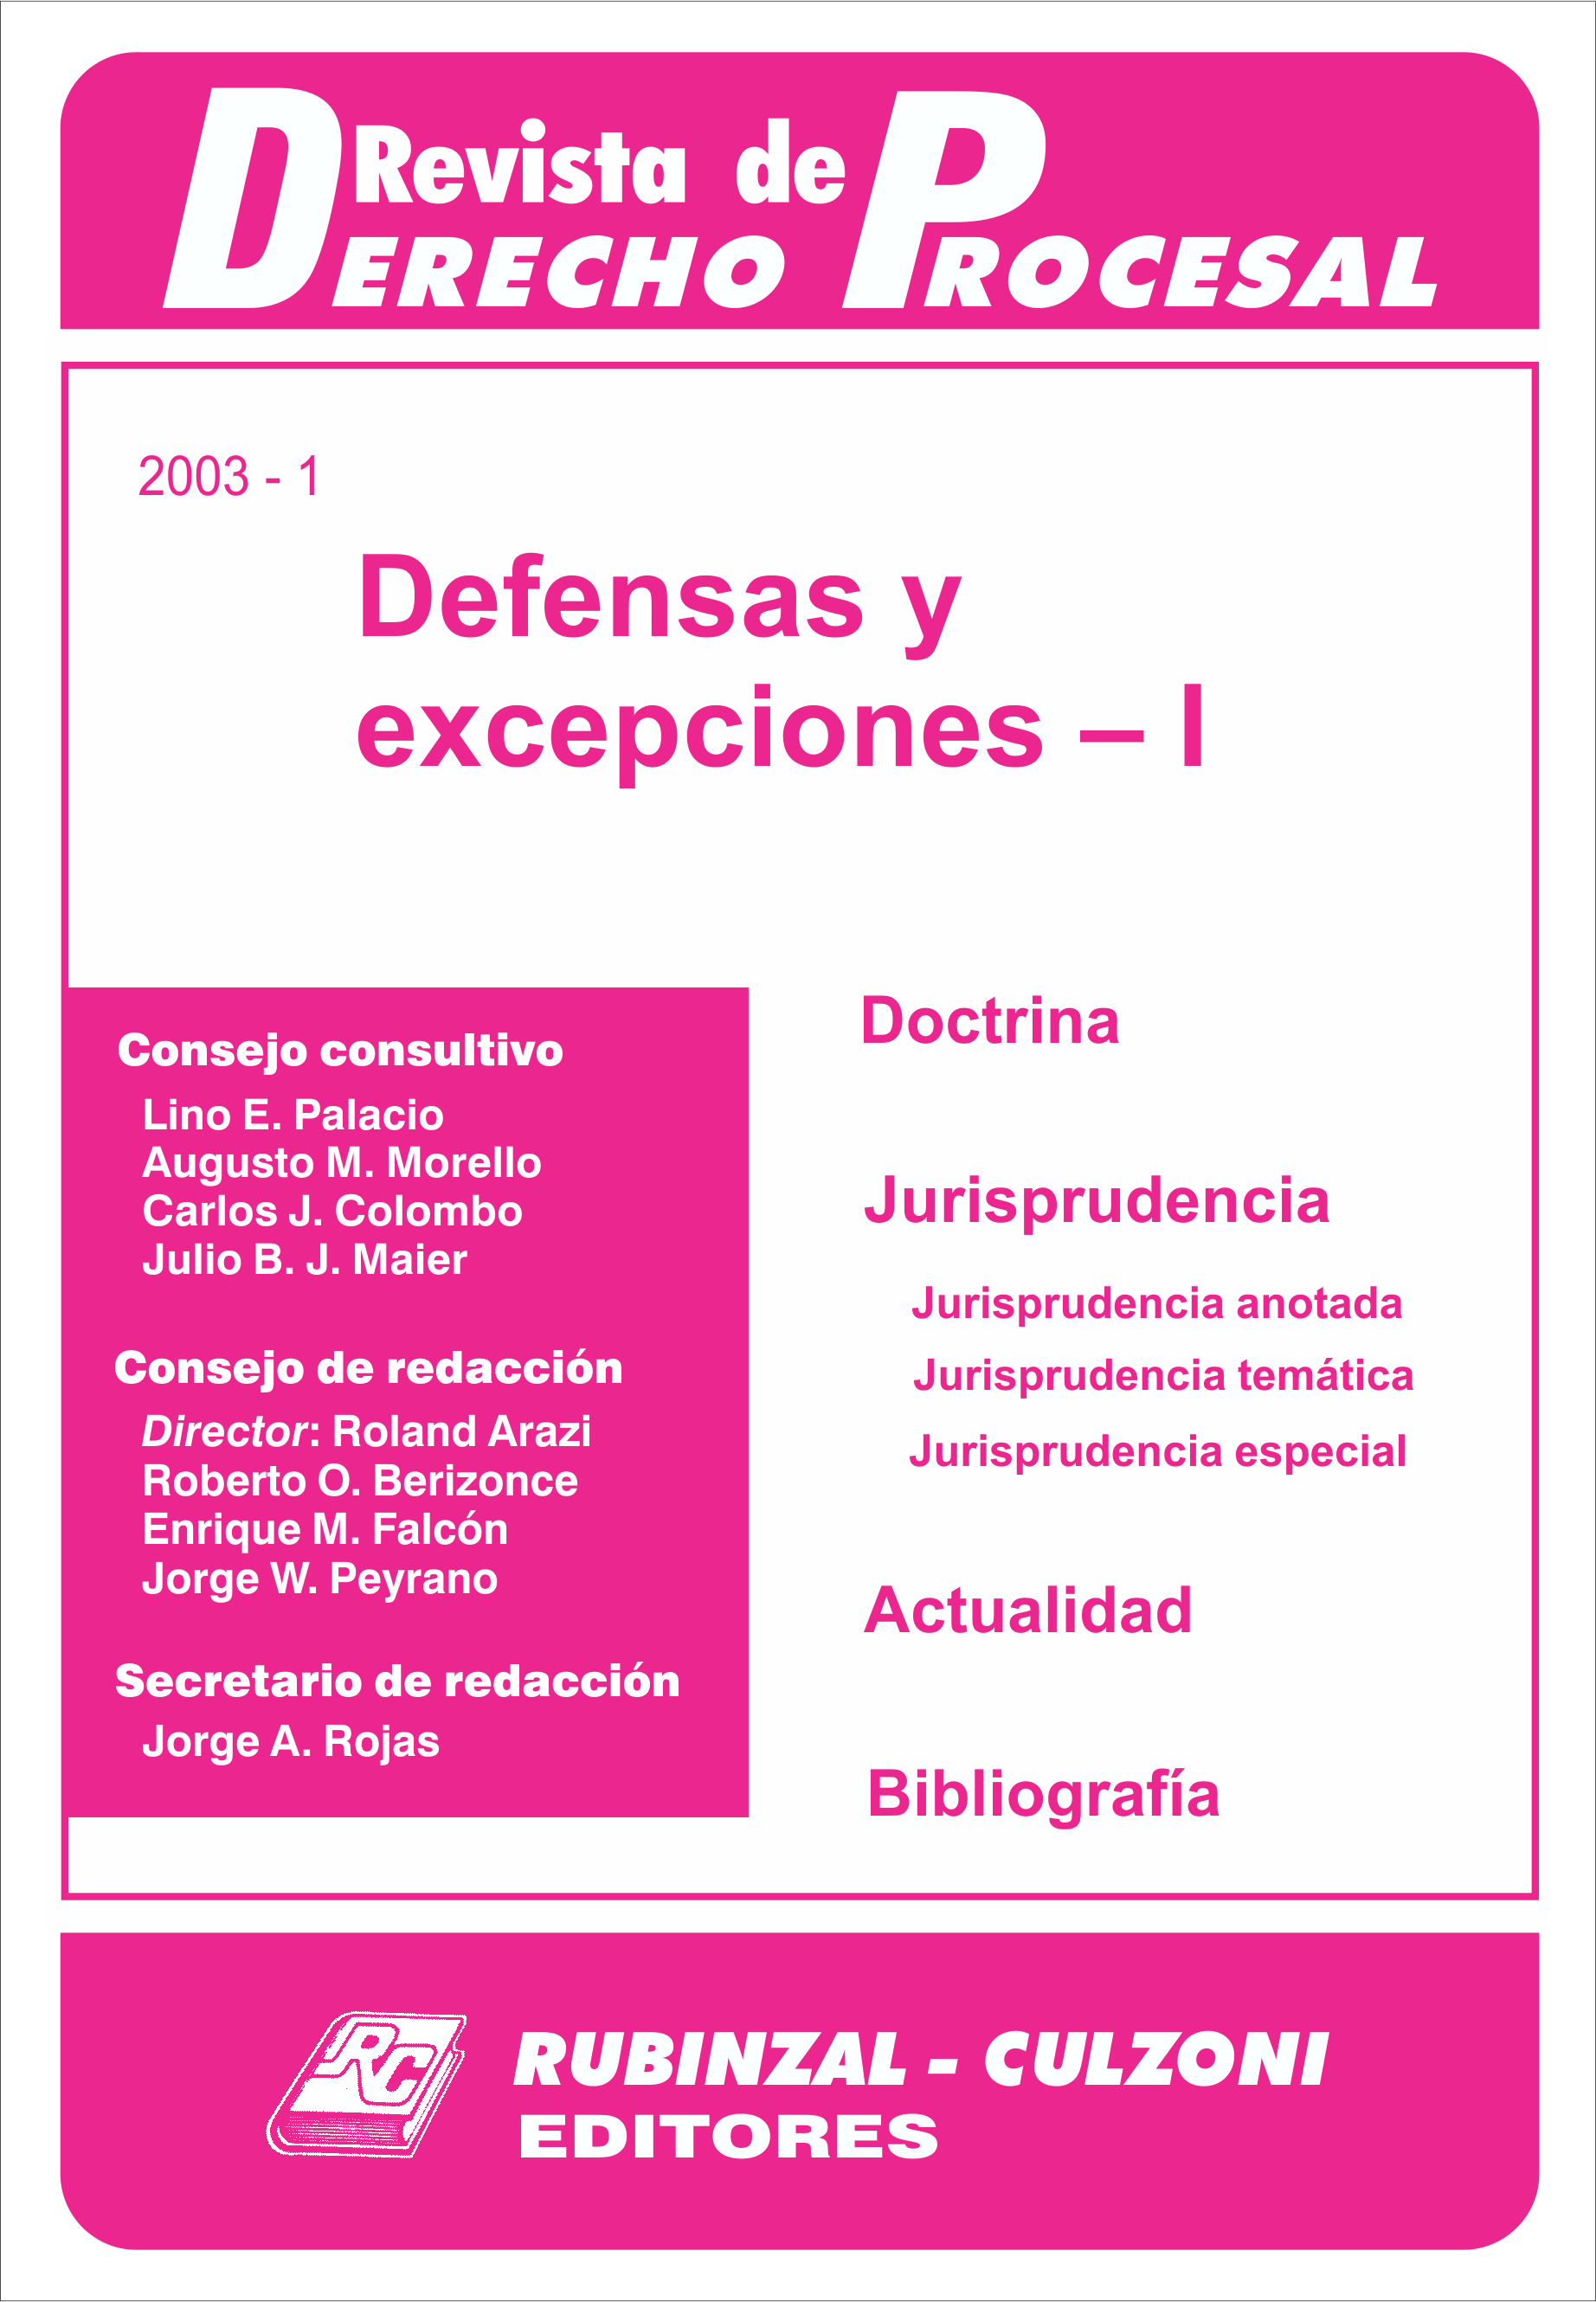 Revista de Derecho Procesal - Defensas y excepciones - I